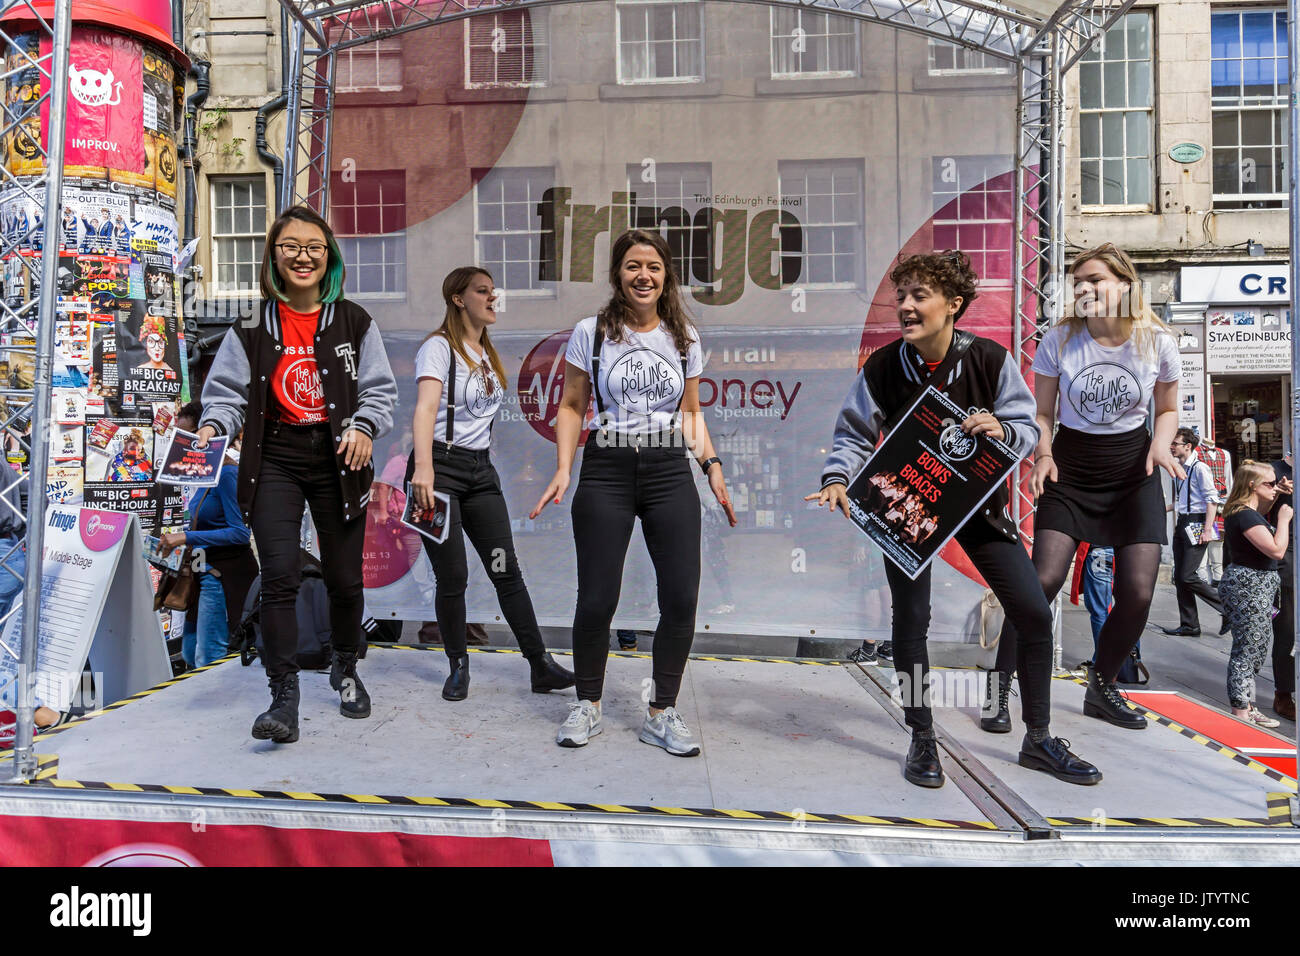 Sanfte Töne Gruppe ihre Bogen Förderung und Klammern zeigen an der Edinburgh Festival Fringe 2017 in der High Street auf der Royal Mile in Edinburgh Schottland Großbritannien Stockfoto